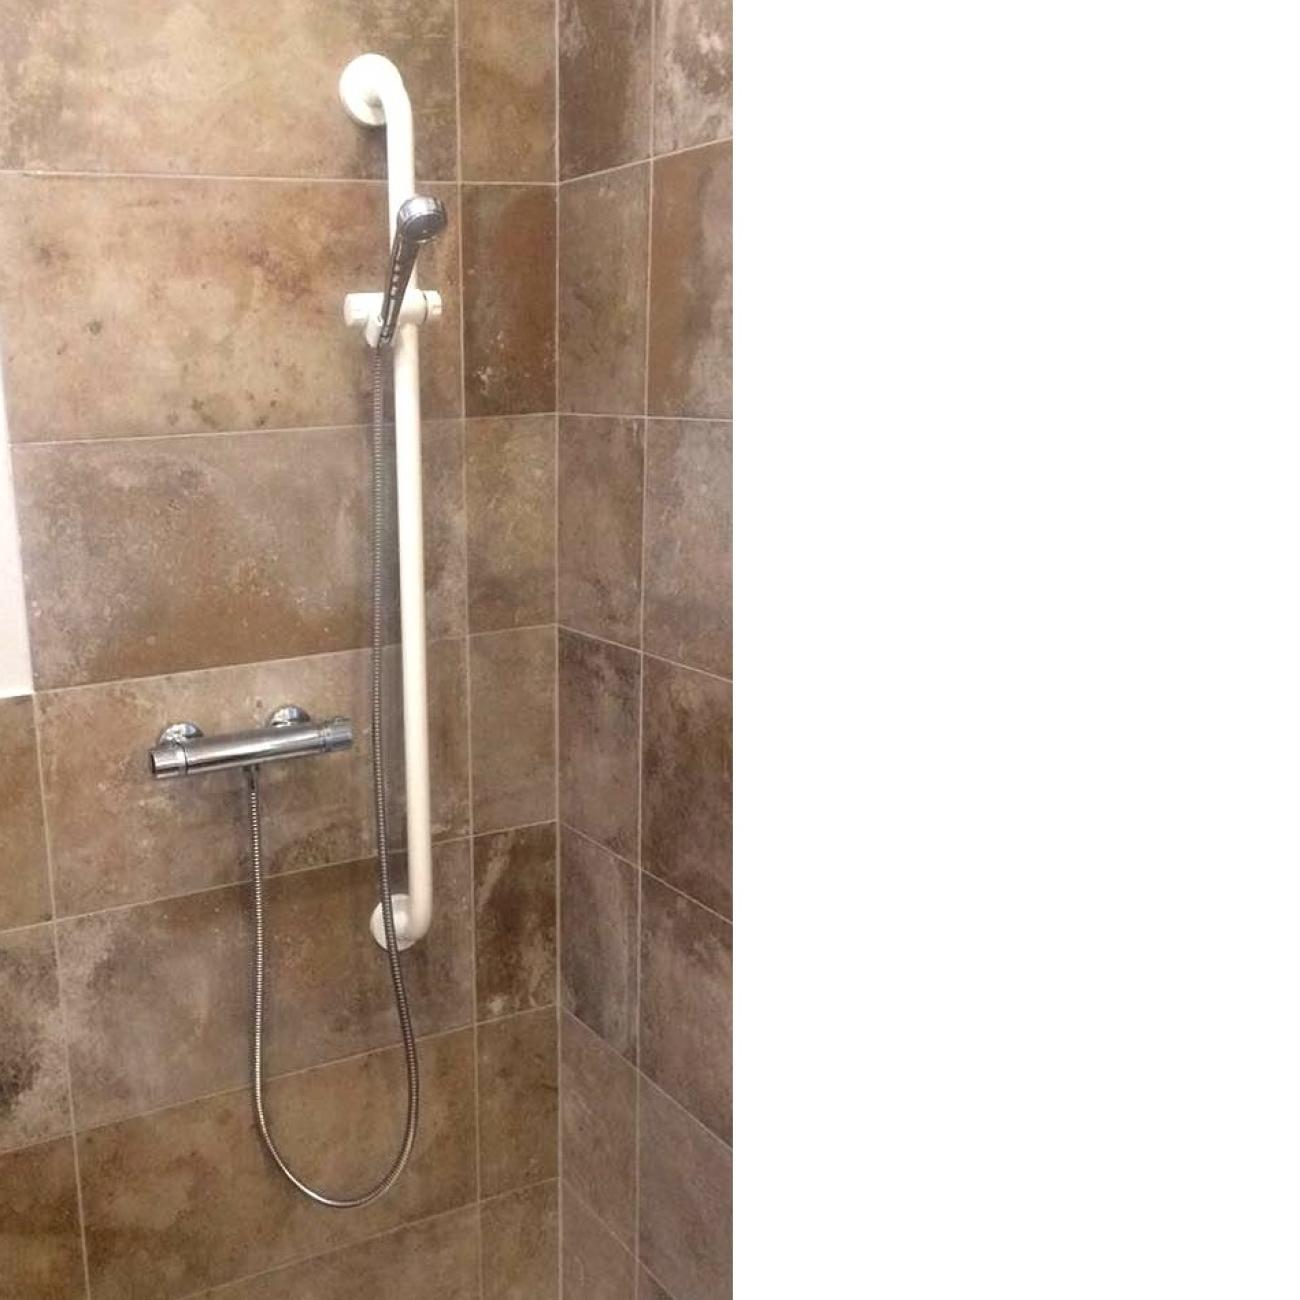 Installazione maniglione all'interno del box doccia 